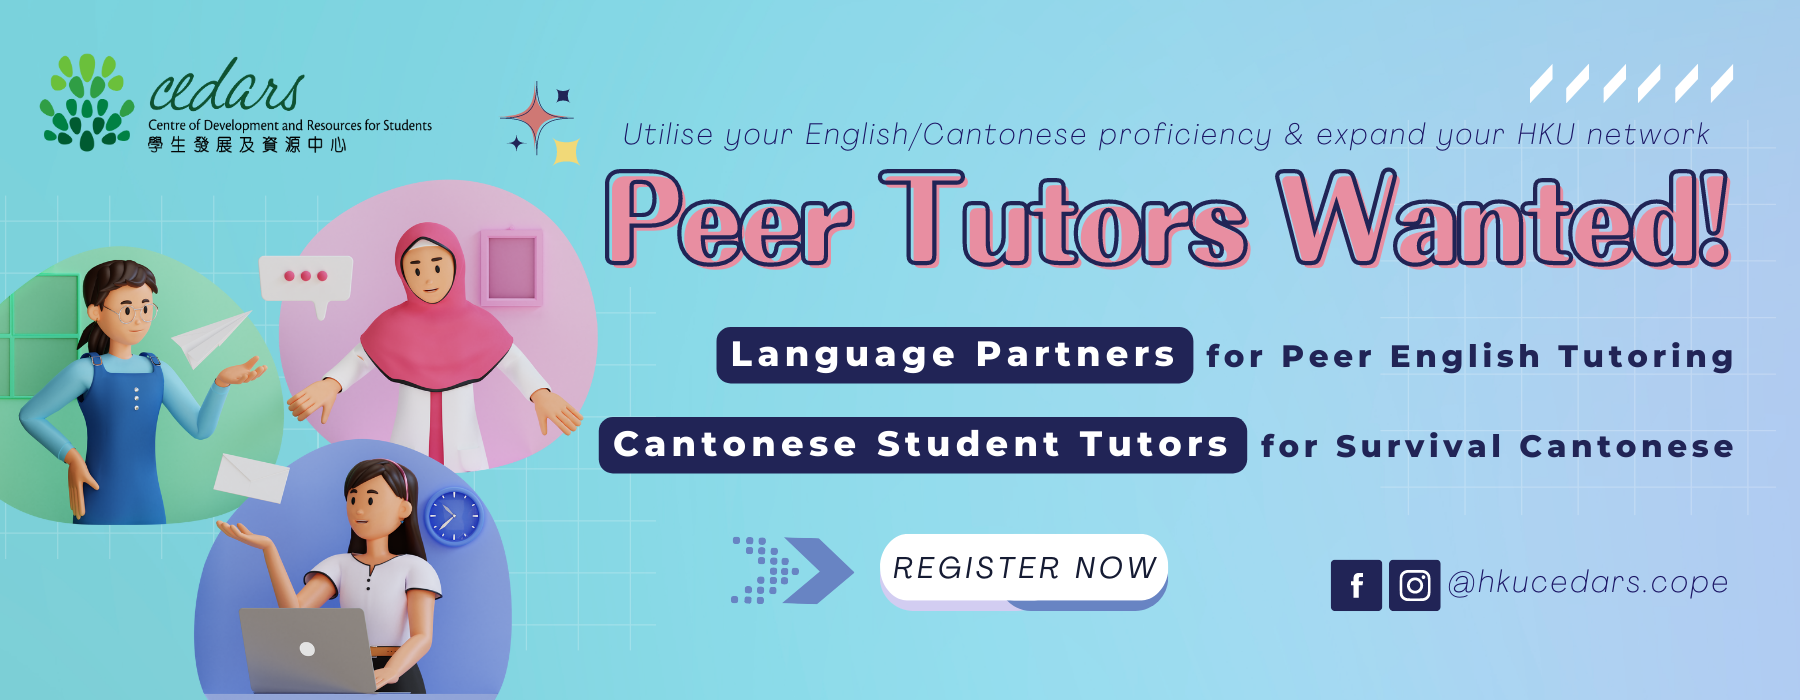 Peer Language Tutoring Programmes - Recruiting Peer Tutors